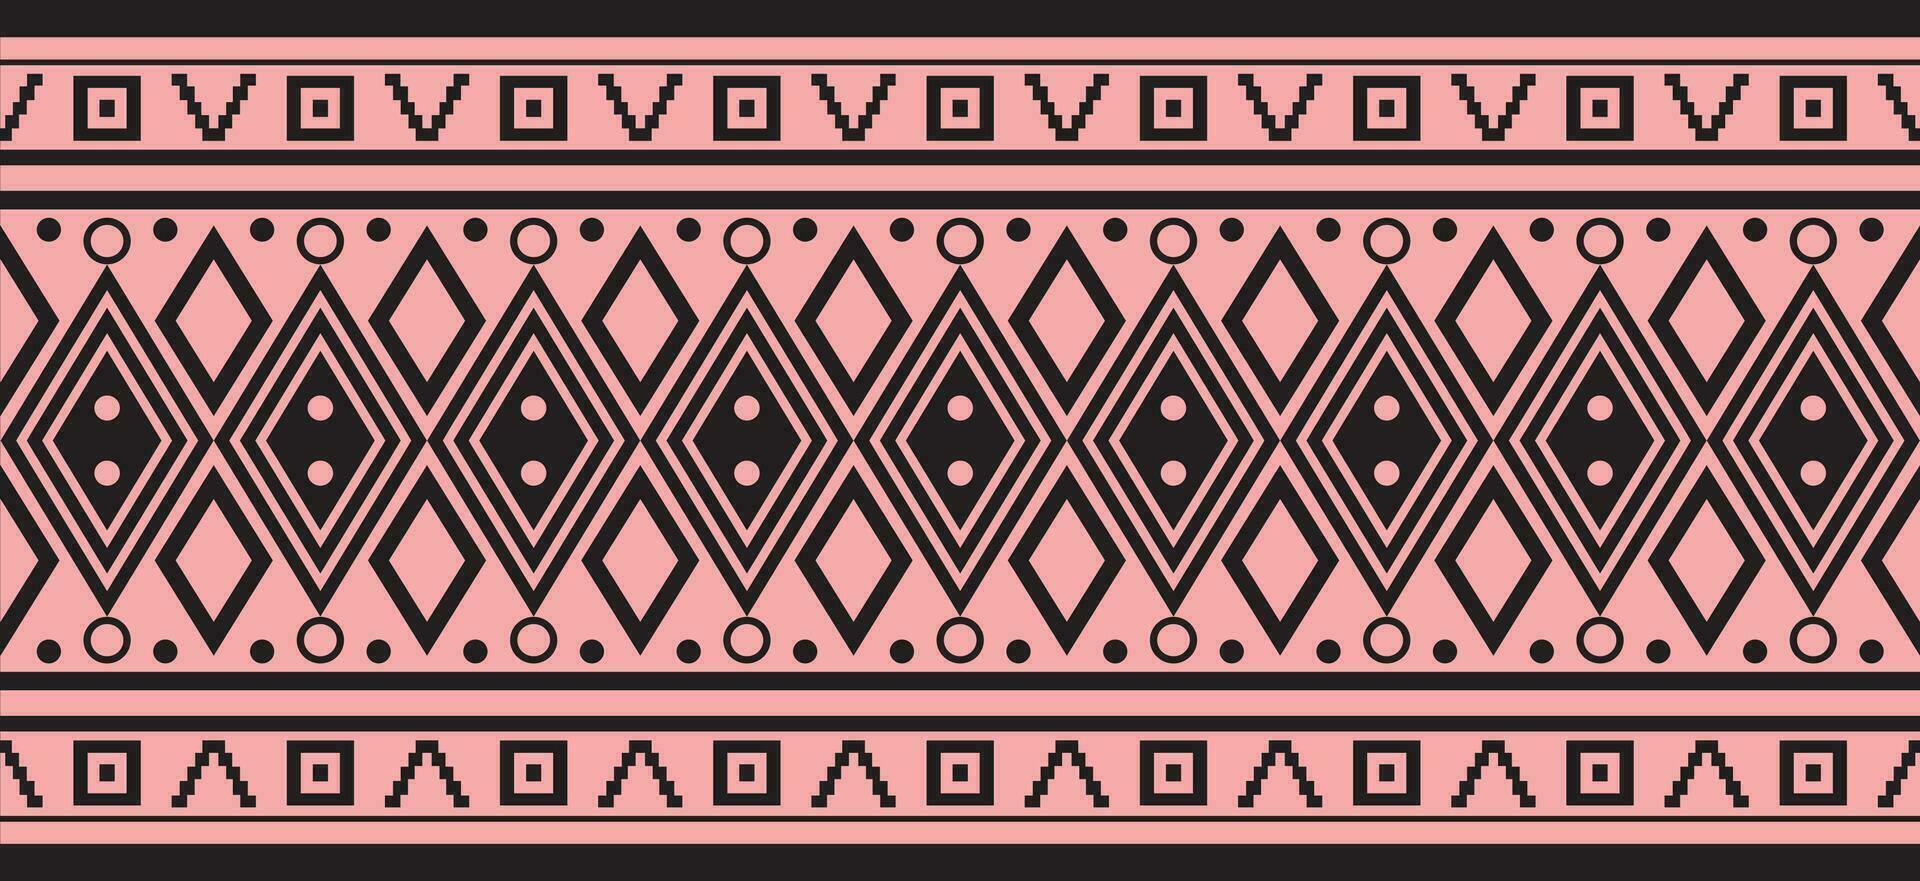 vector roze en zwart naadloos Indisch patronen. nationaal naadloos ornamenten, grenzen, kozijnen. gekleurde decoraties van de volkeren van zuiden Amerika, Maya, inca, Azteken.